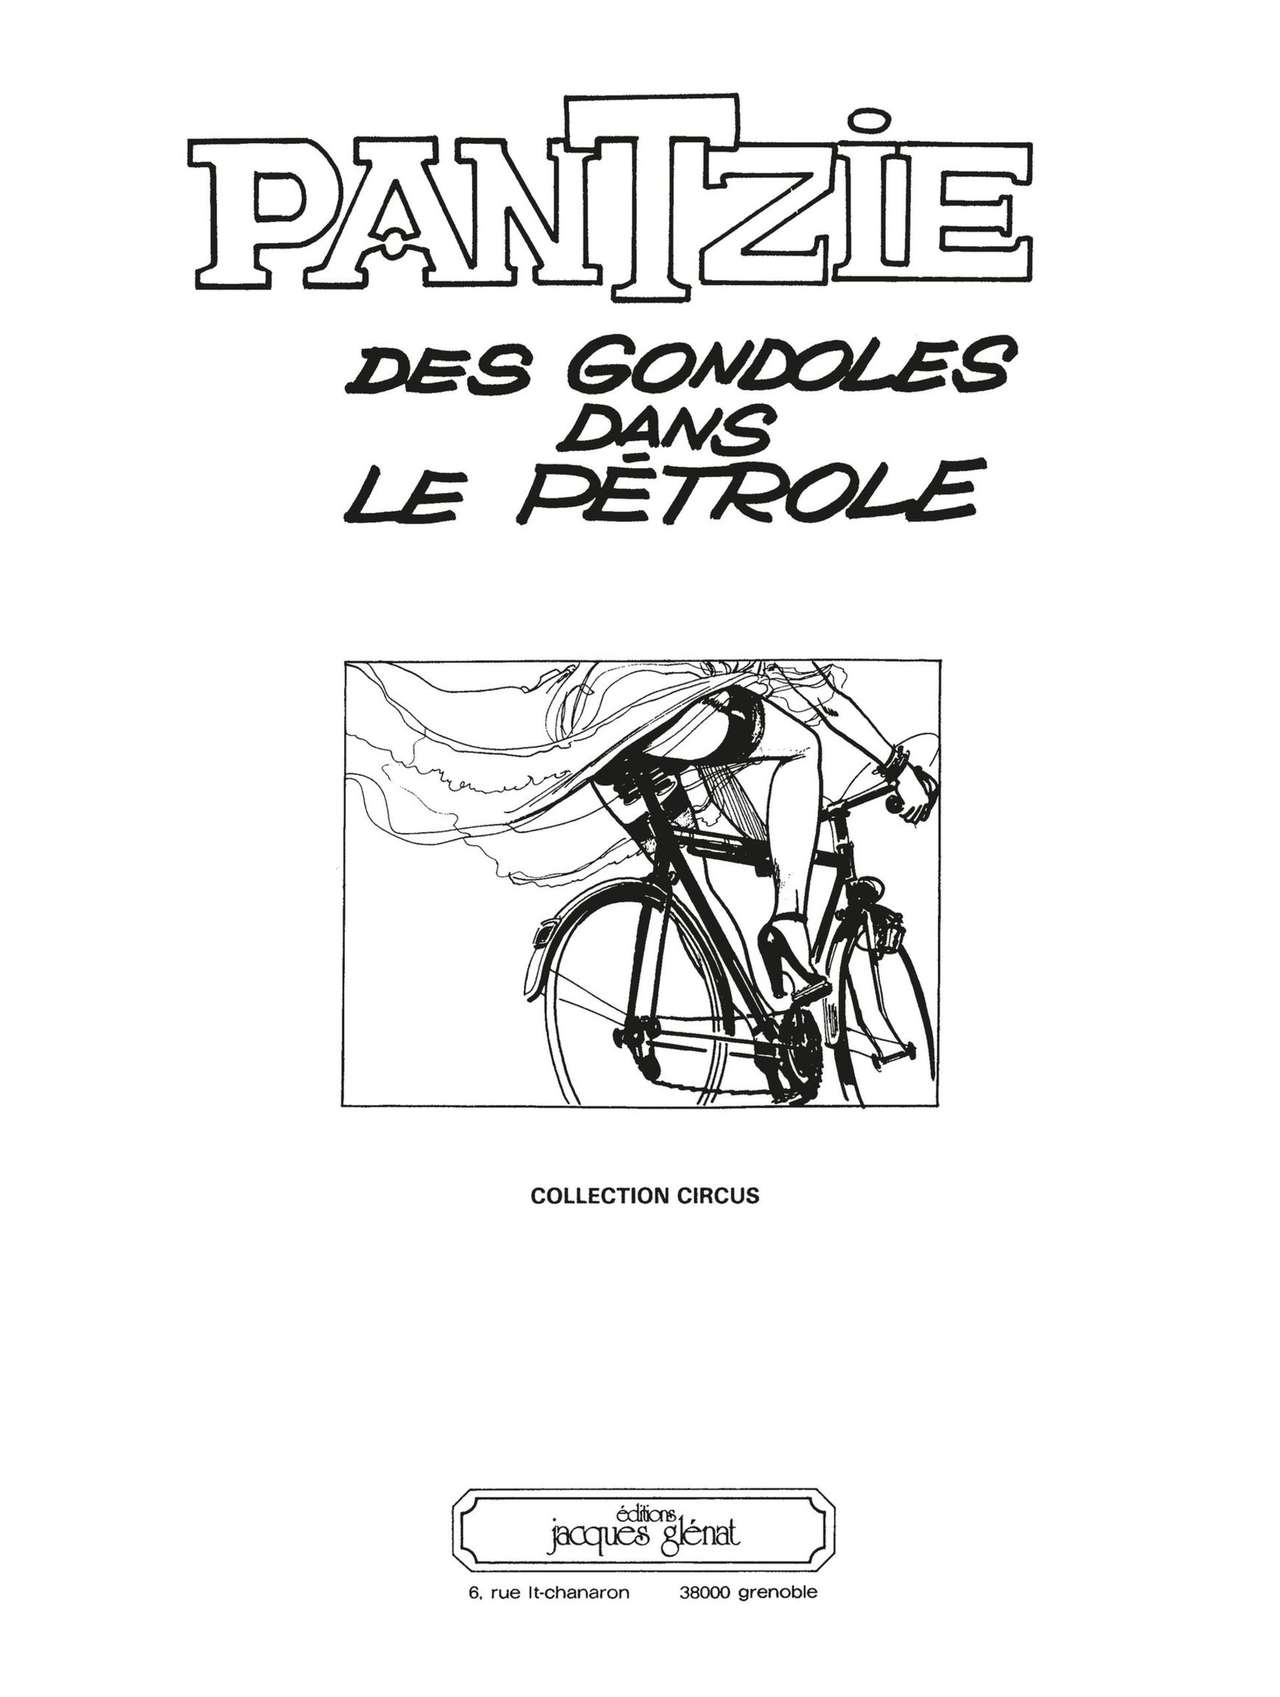 Pantzie - Des Gondoles dans le Pétrole numero d'image 2